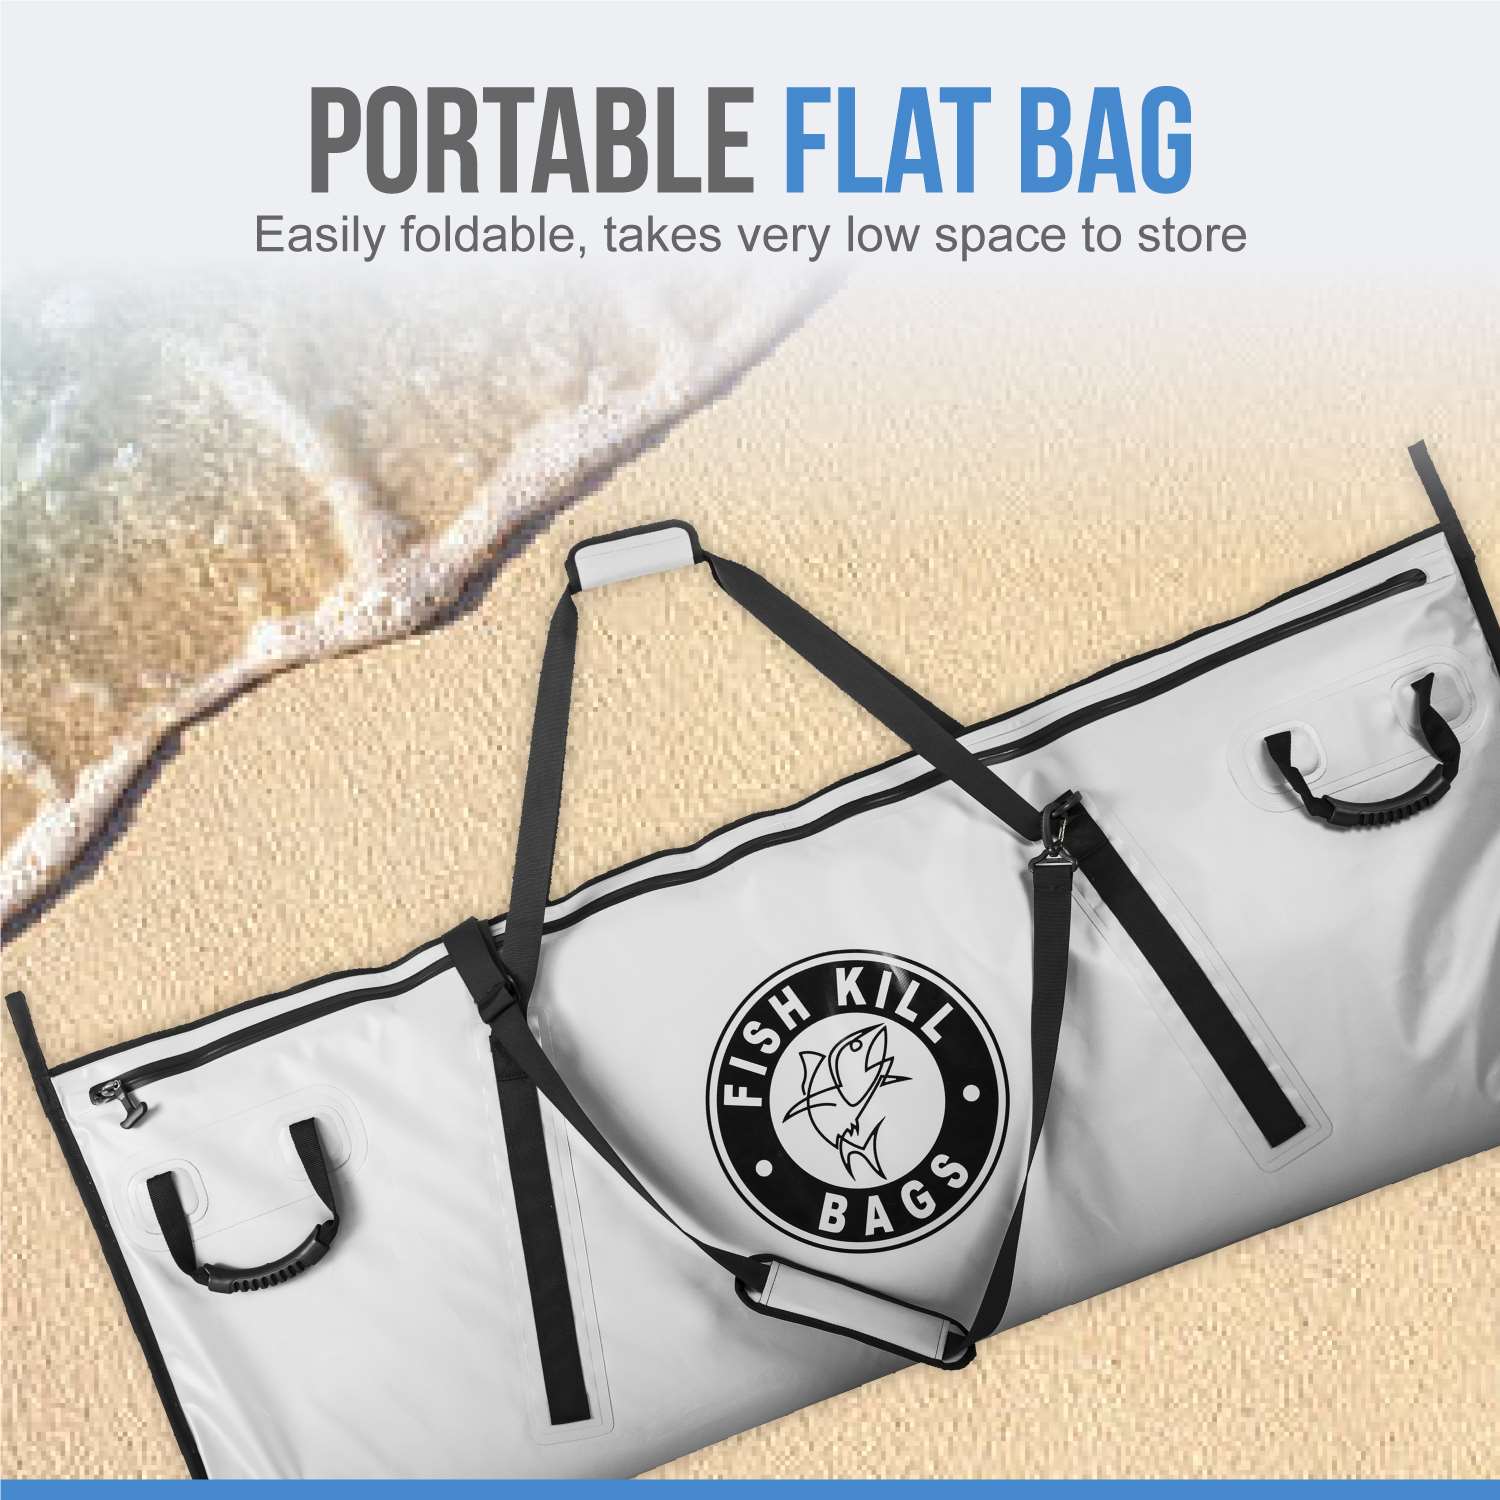 PVC Tarpaulin Flat Bag (Large- 60" x 24")